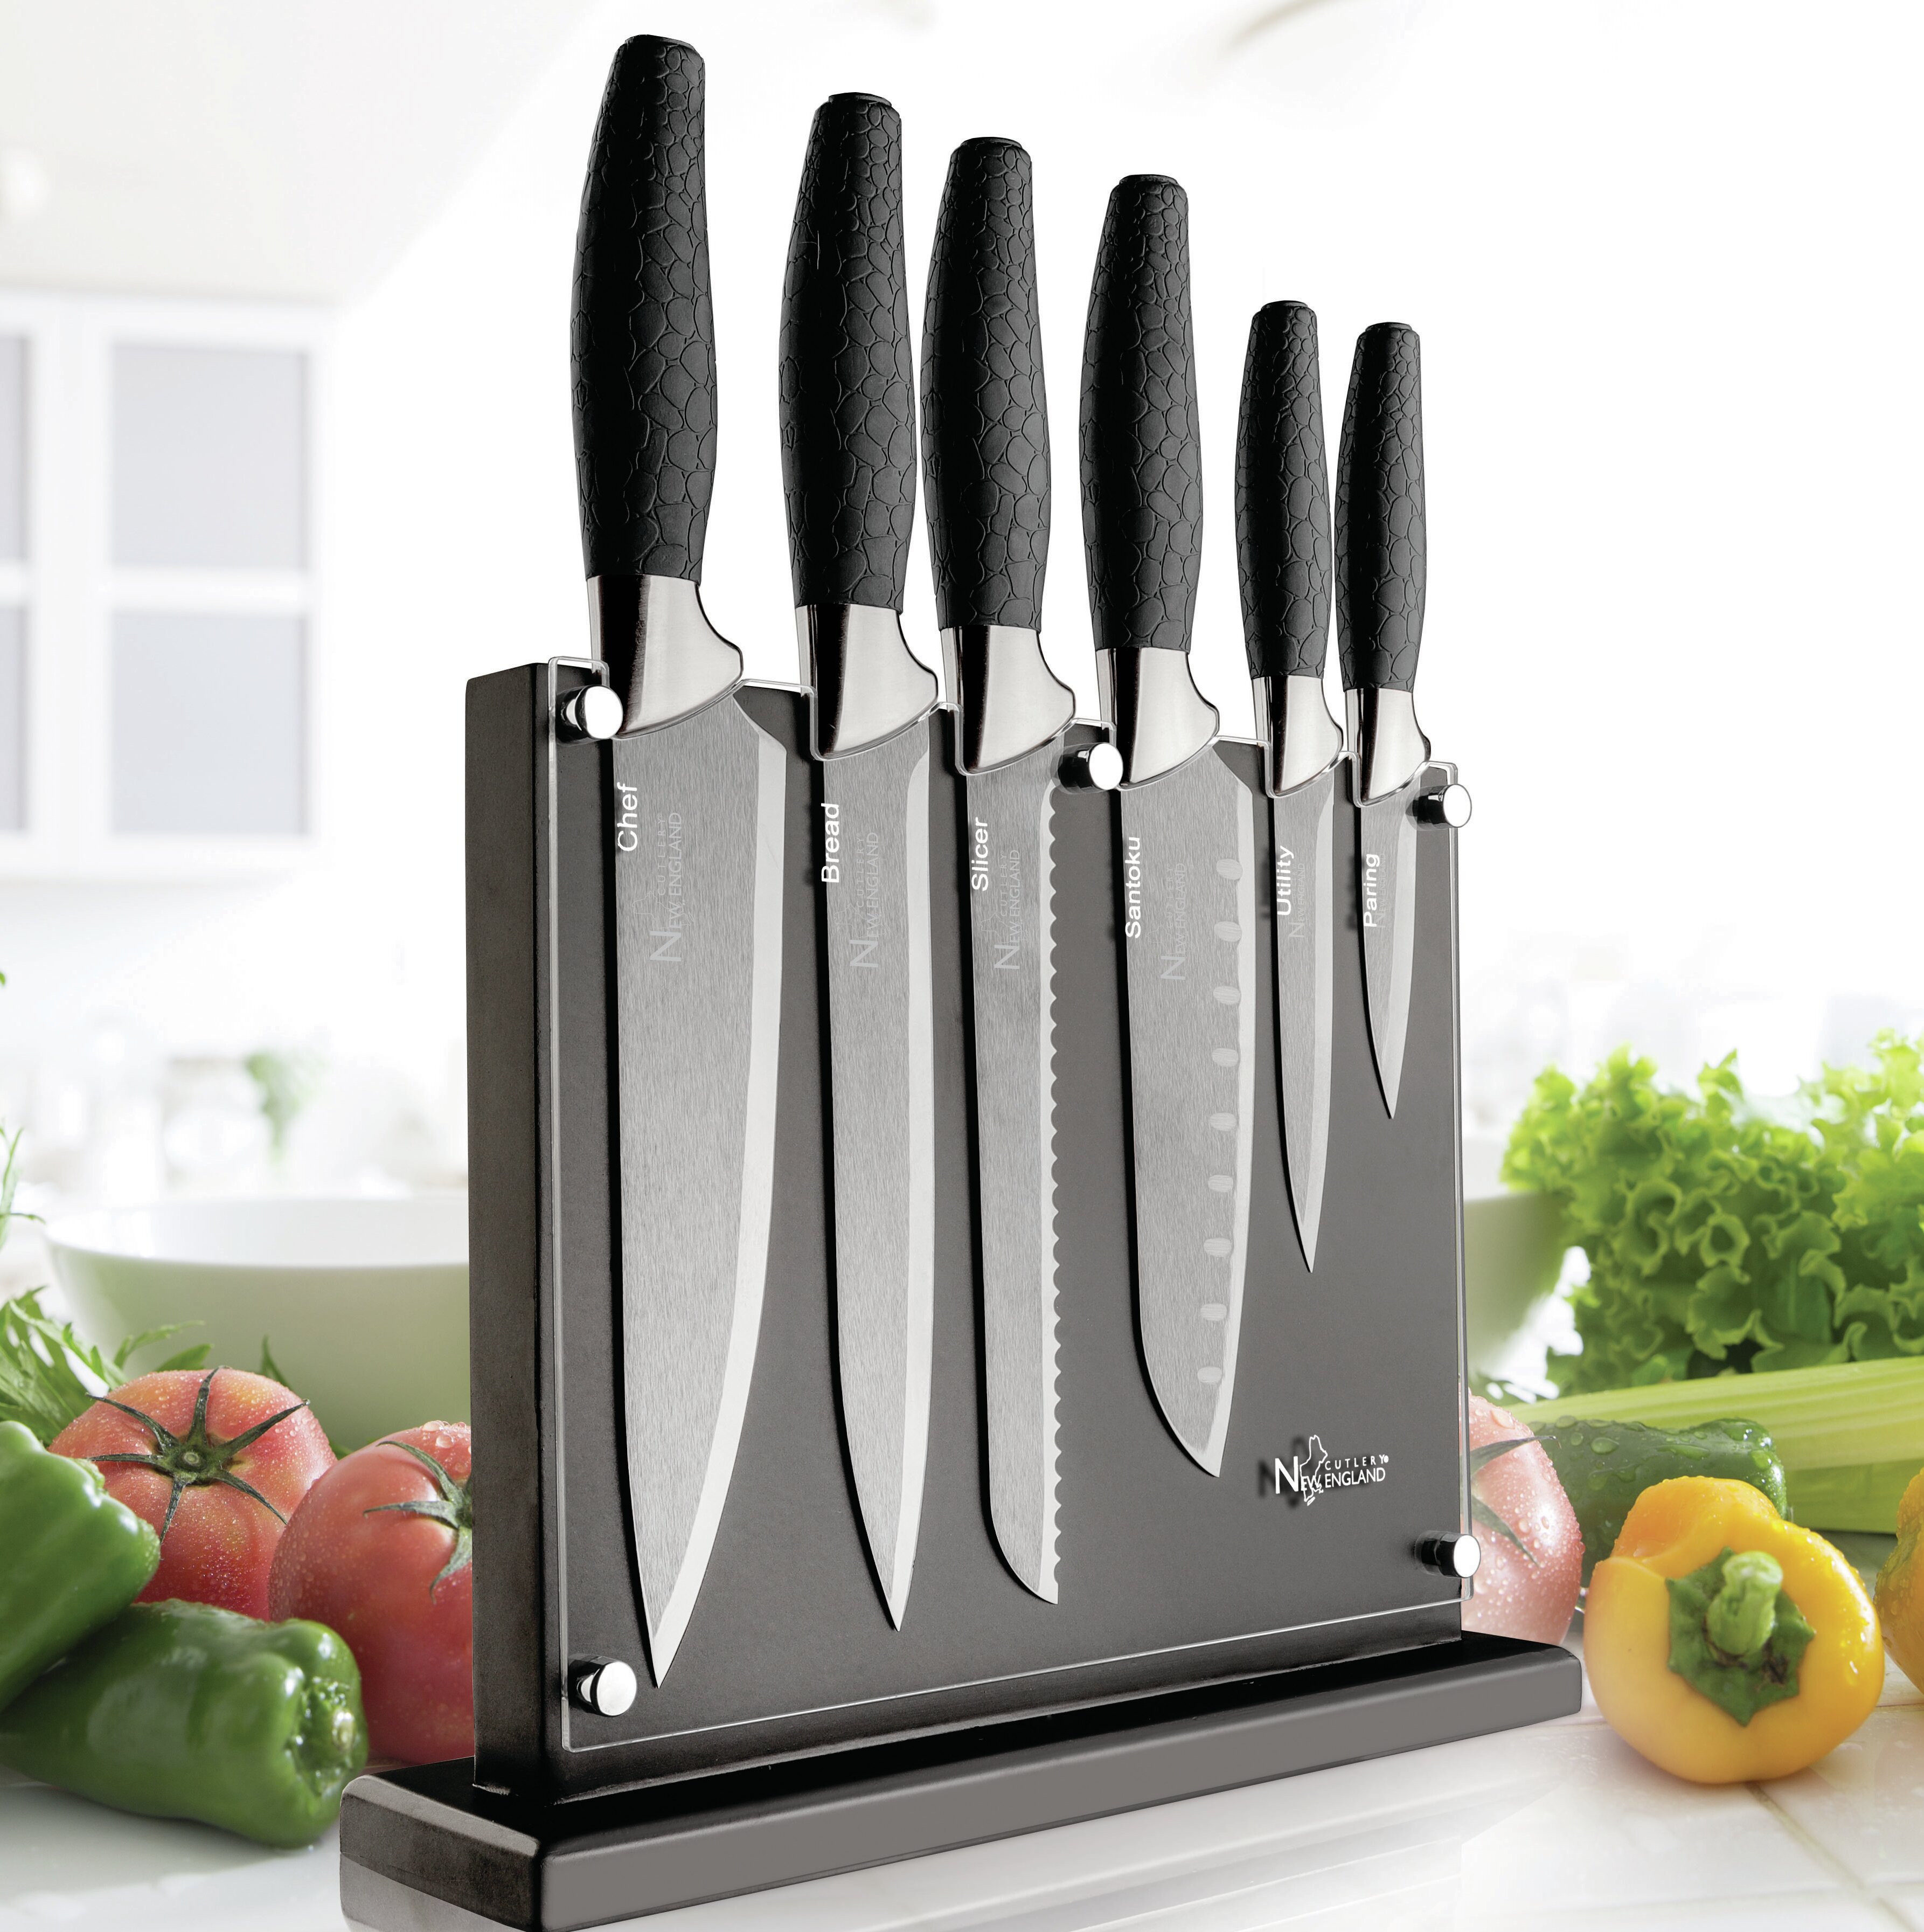 https://assets.wfcdn.com/im/63434245/compr-r85/6599/65998257/new-england-cutlery-7-piece-high-carbon-stainless-steel-knife-block-set.jpg